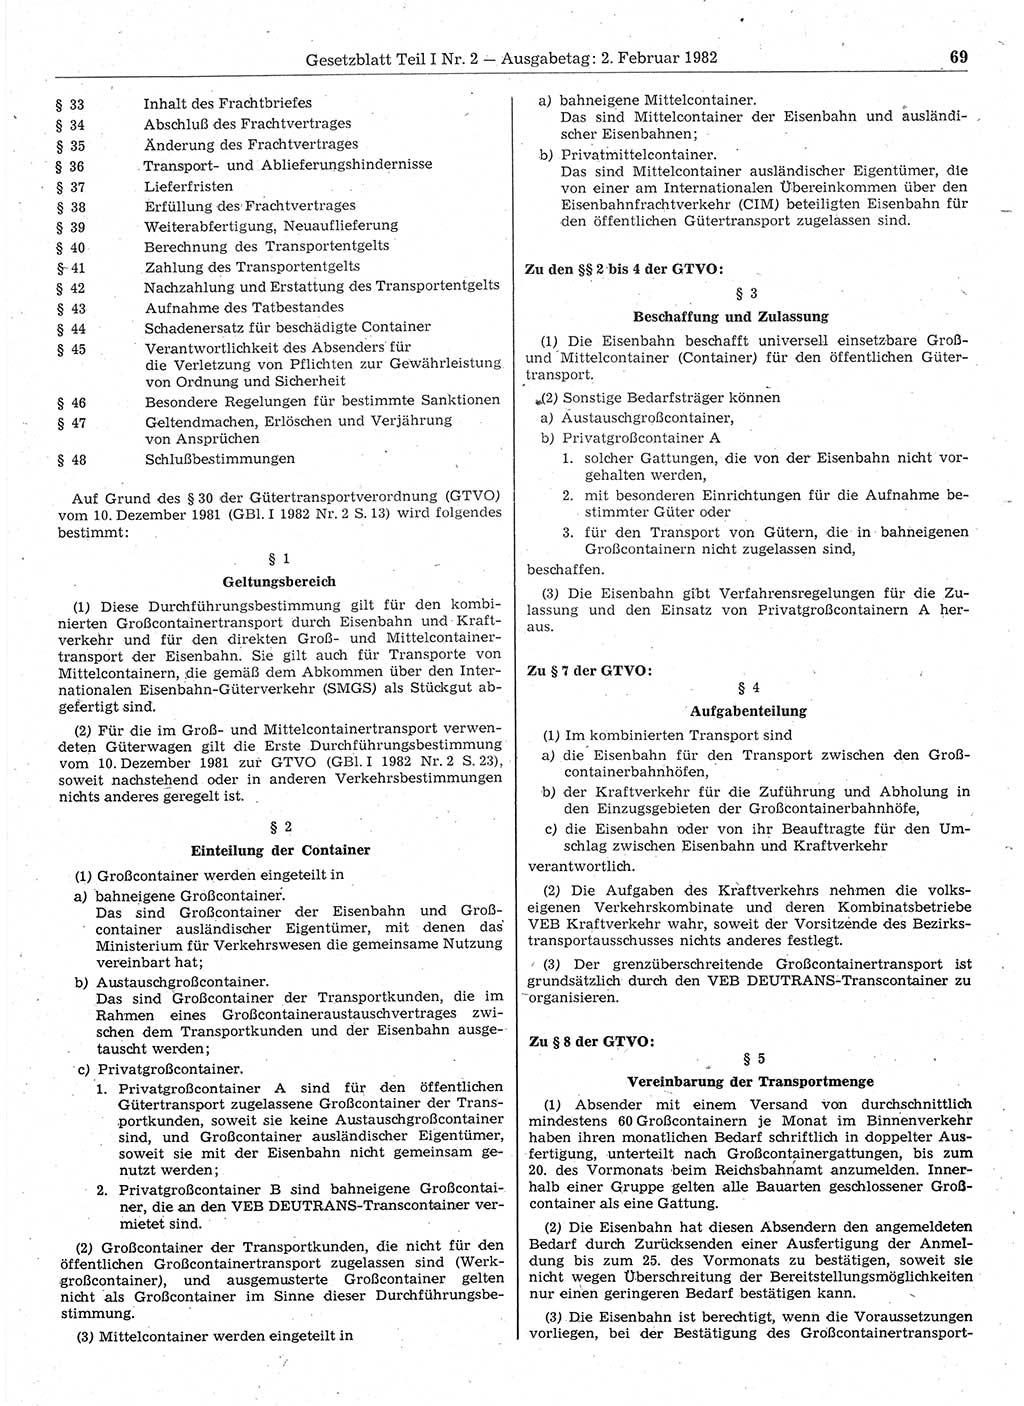 Gesetzblatt (GBl.) der Deutschen Demokratischen Republik (DDR) Teil Ⅰ 1982, Seite 69 (GBl. DDR Ⅰ 1982, S. 69)